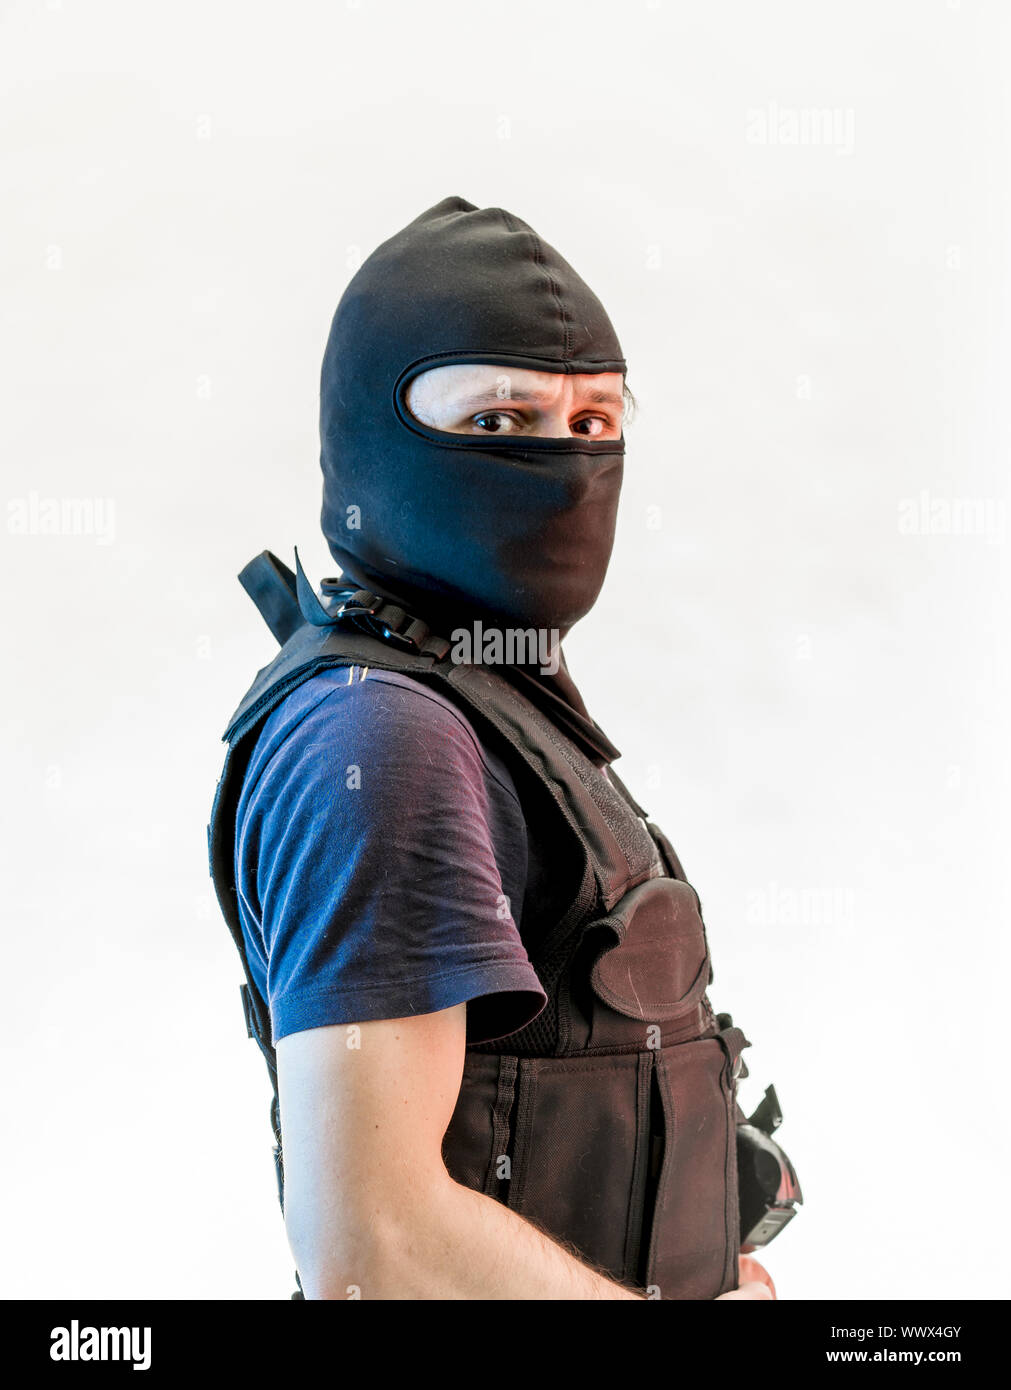 Bewaffneter Mann mit Sturmhaube und kugelsichere Weste, Pistole und Schrotflinte, kalaschnikow Stockfoto